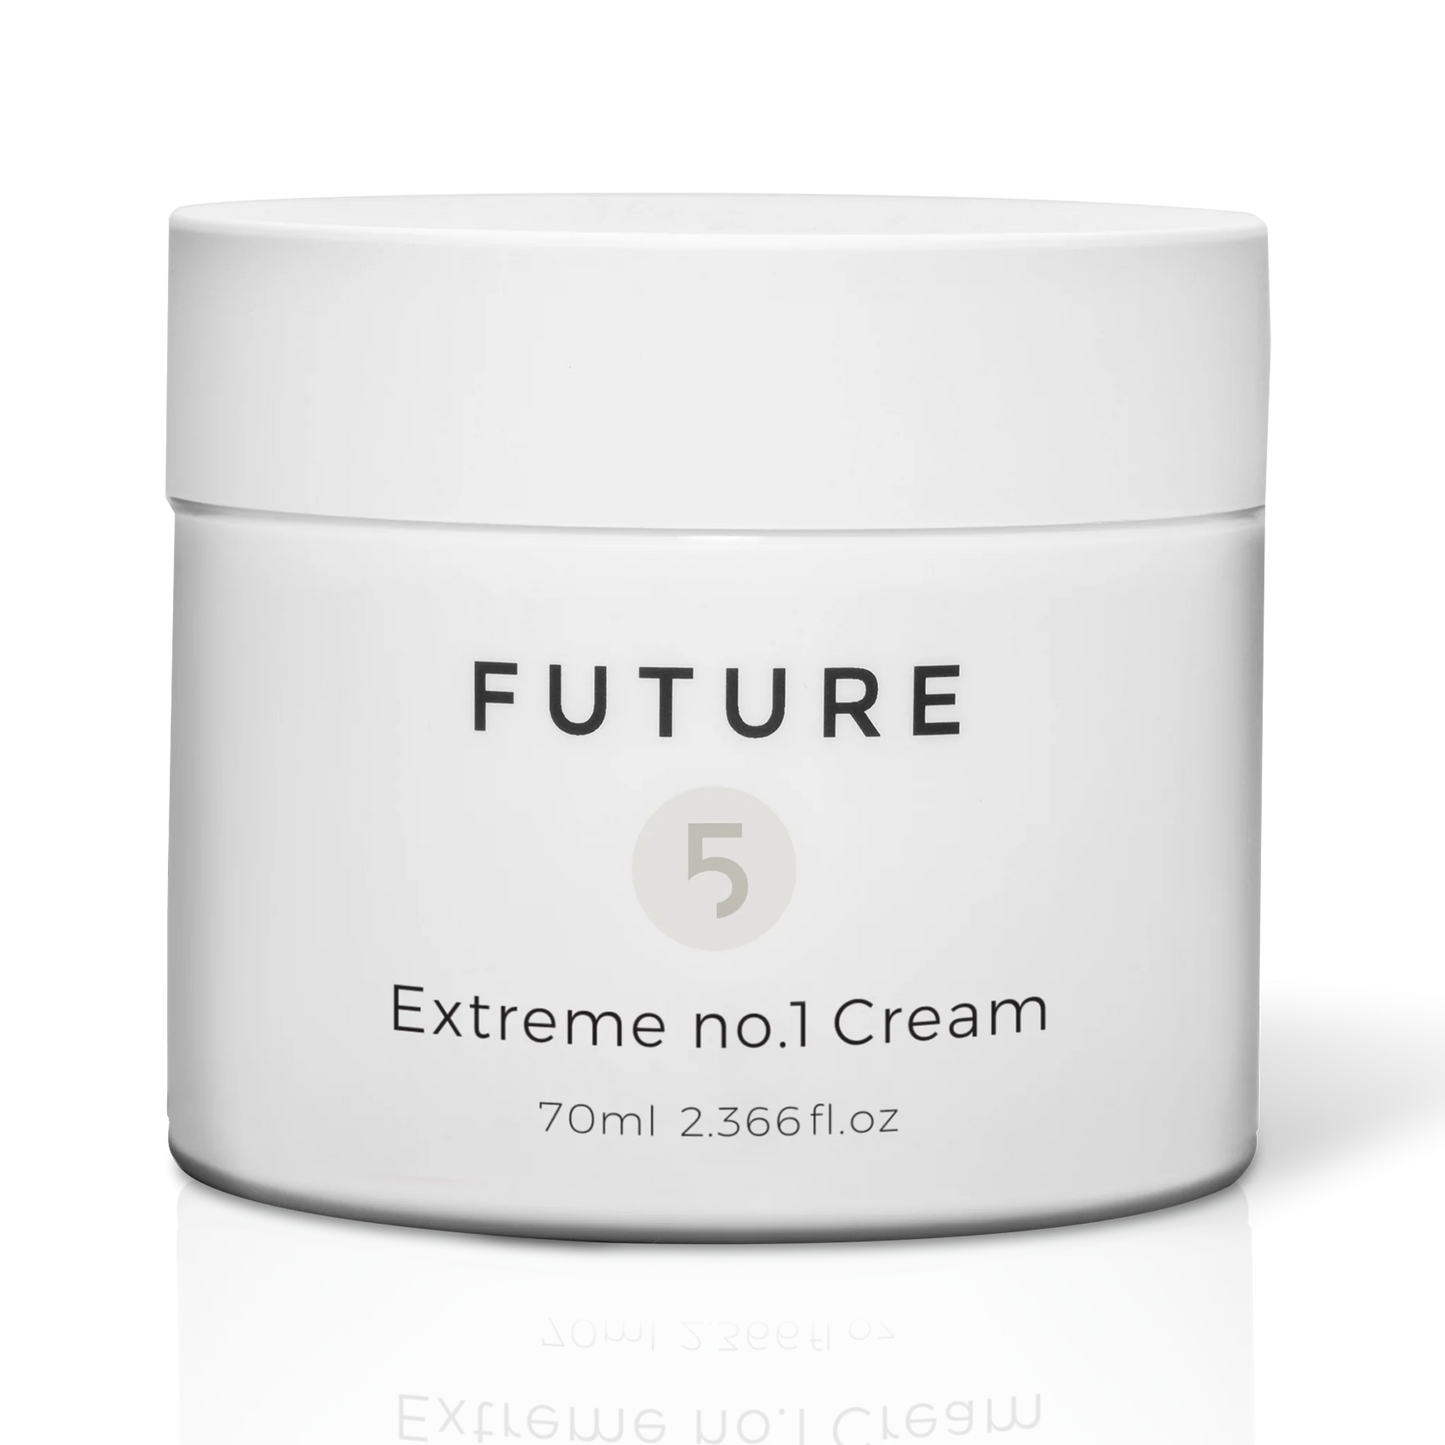 Extreme no. 1 Cream